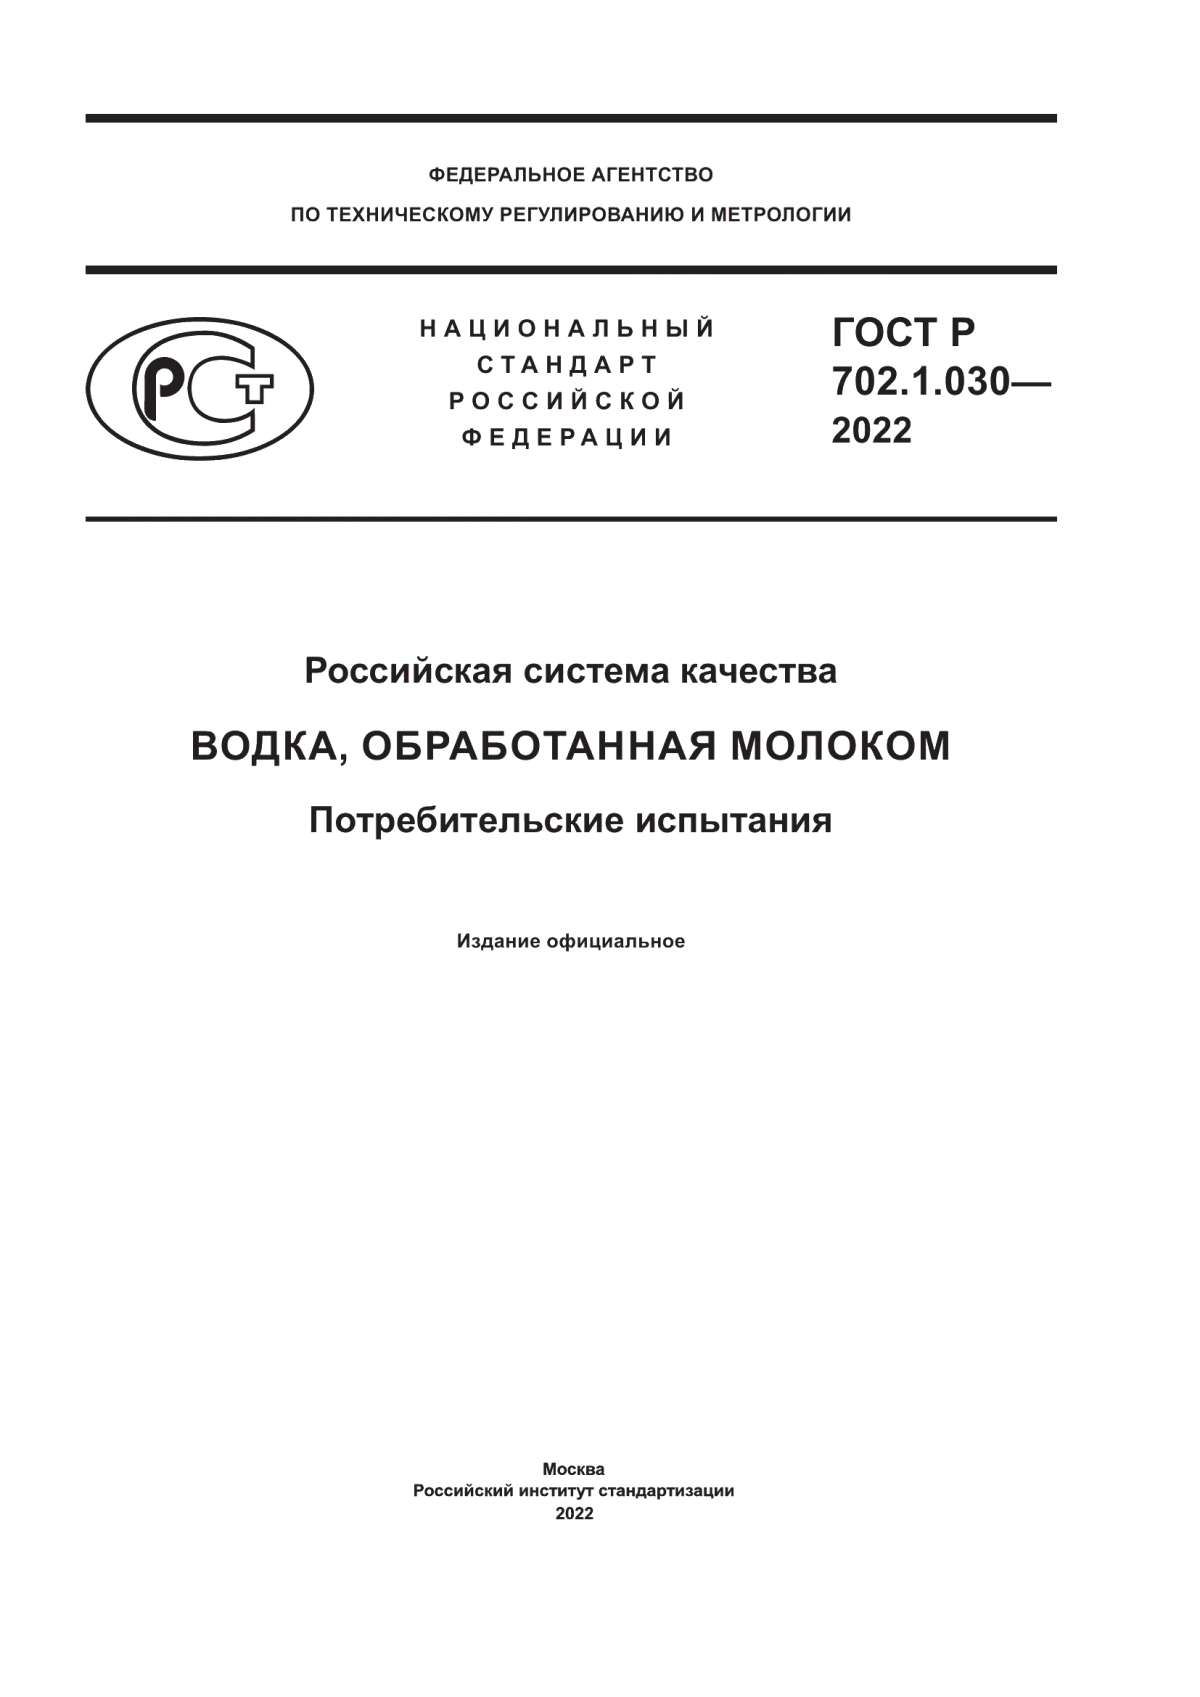 ГОСТ Р 702.1.030-2022 Российская система качества. Водка, обработанная молоком. Потребительские испытания